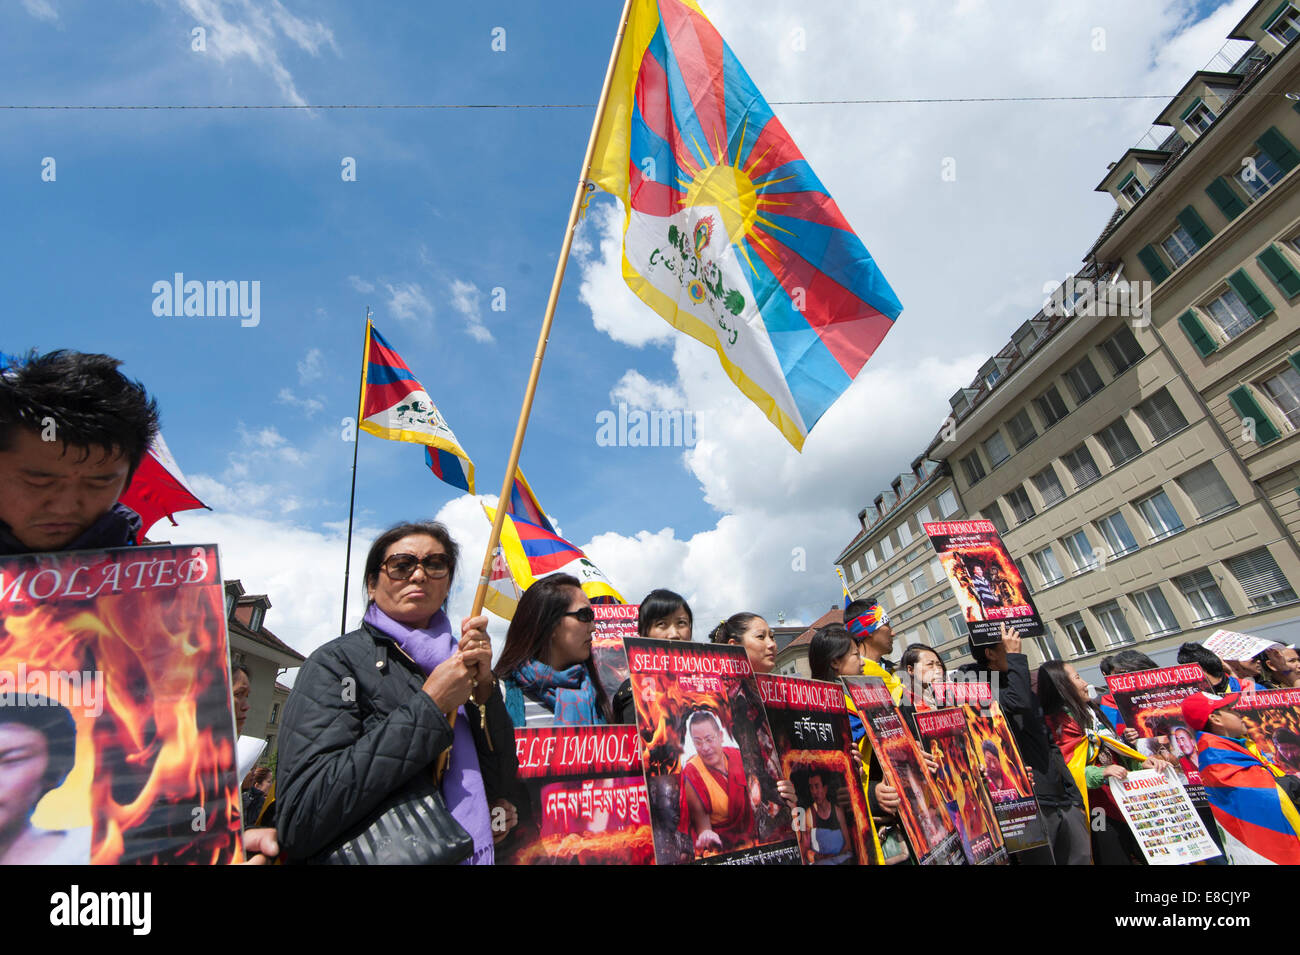 Les tibétains sont maintenant des affiches et des drapeaux à un meeting de protestation au cours de la visite du Premier ministre chinois Li Keqiang à Berne,Suisse Banque D'Images